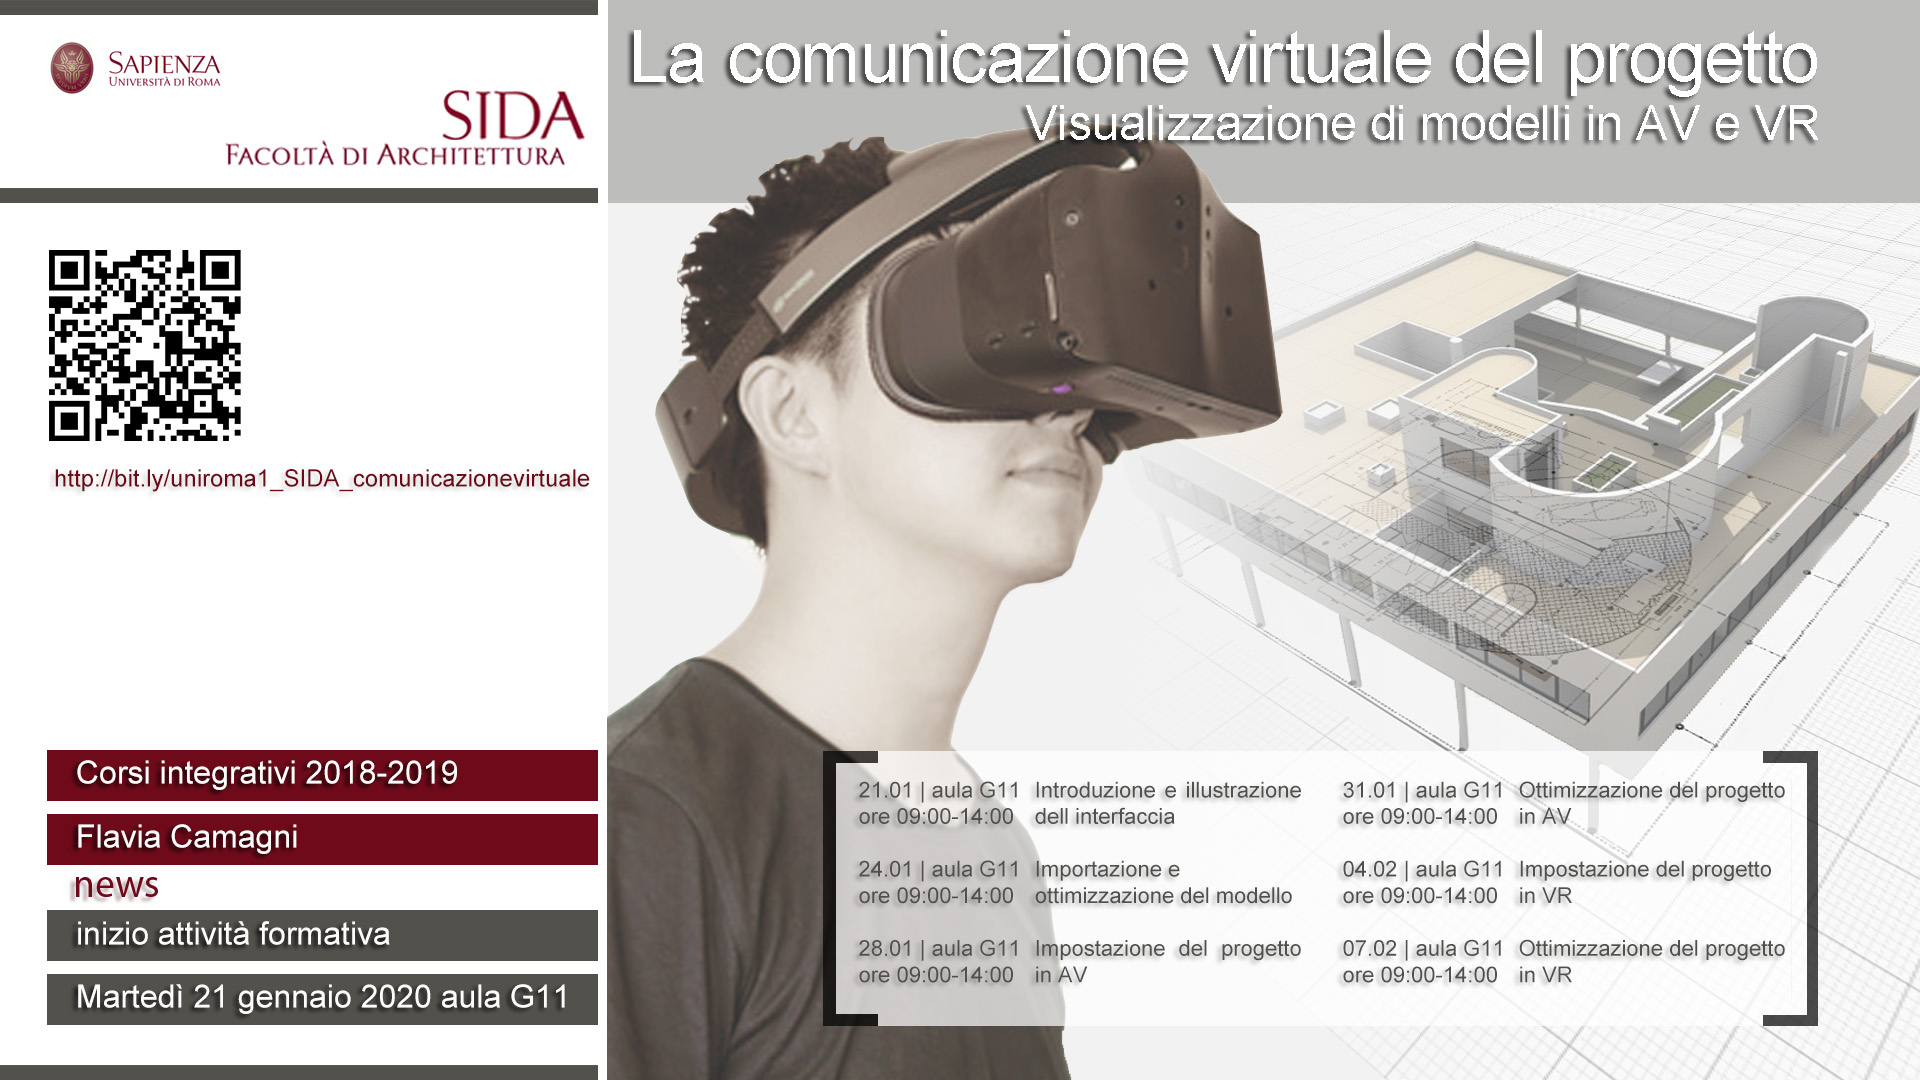 Centro S.I.D.A. 2020 - La comunicazione virtuale del progetto - I edizione -